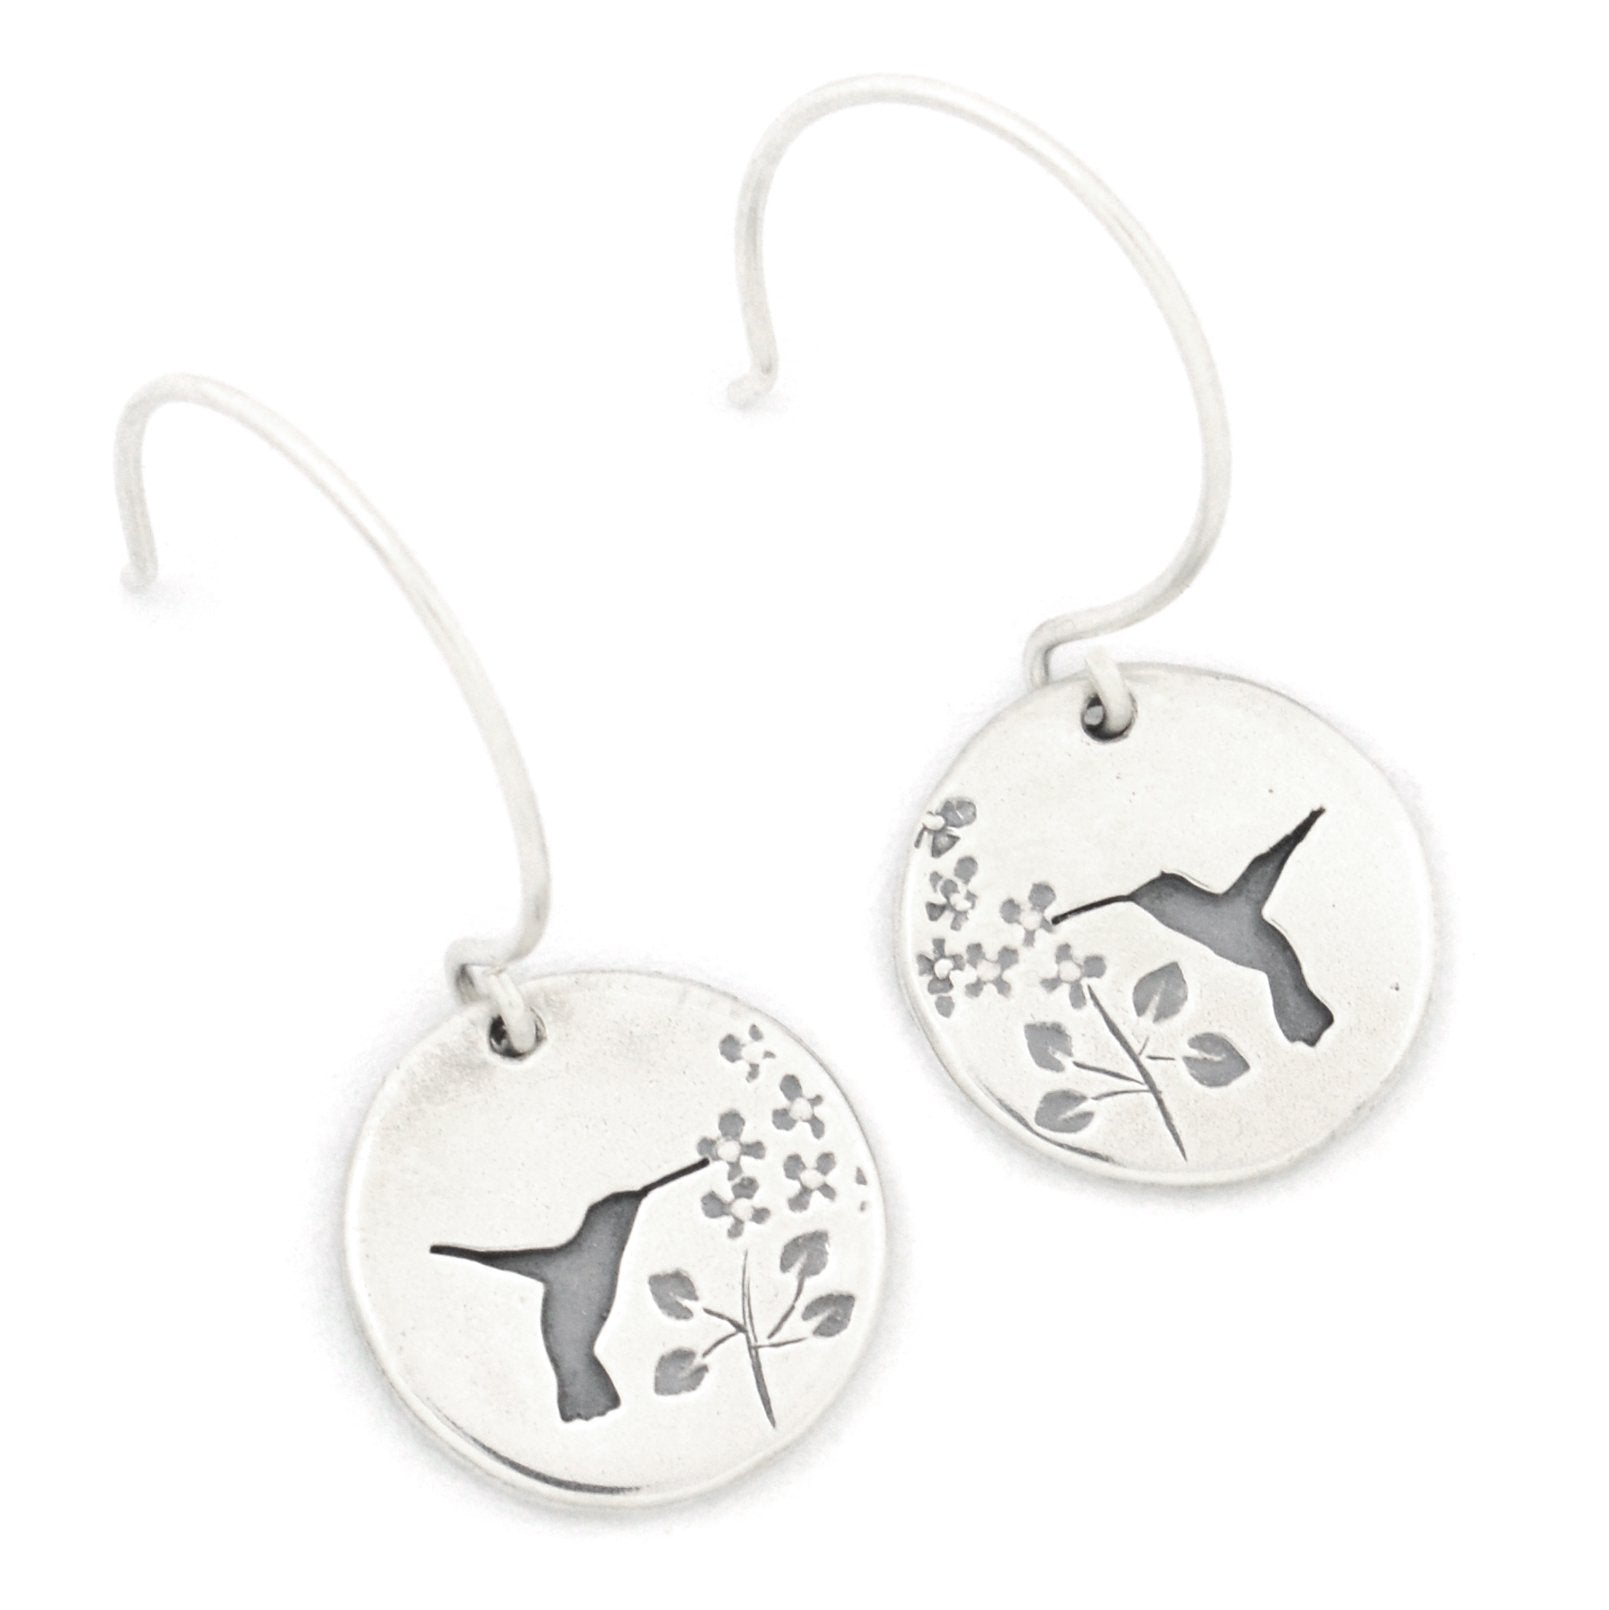 Hummingbird Garden Earrings - Silver Earrings   3698 - handmade by Beth Millner Jewelry